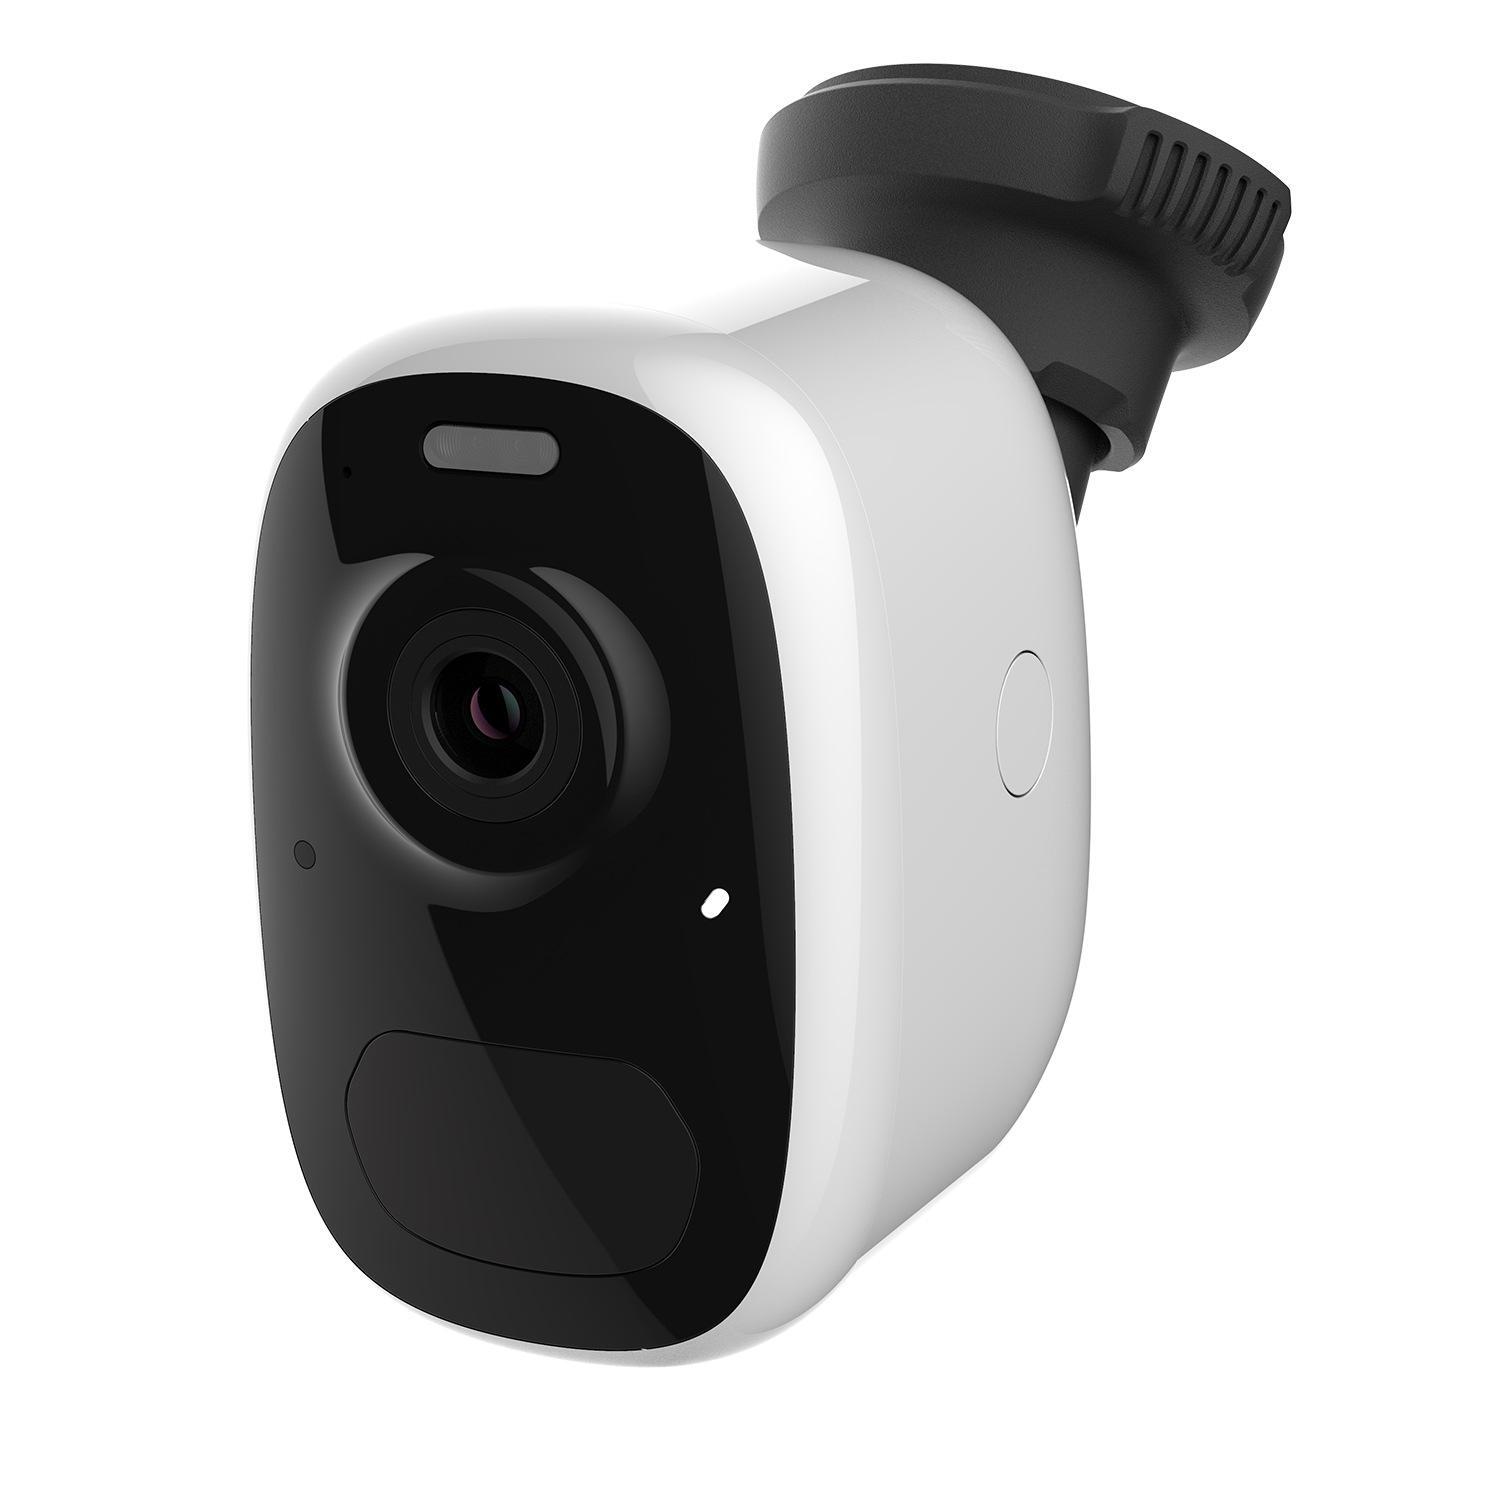 Overvåkningskamera 2,4 Ghz Wifi utendørs kamera - Elkjøp